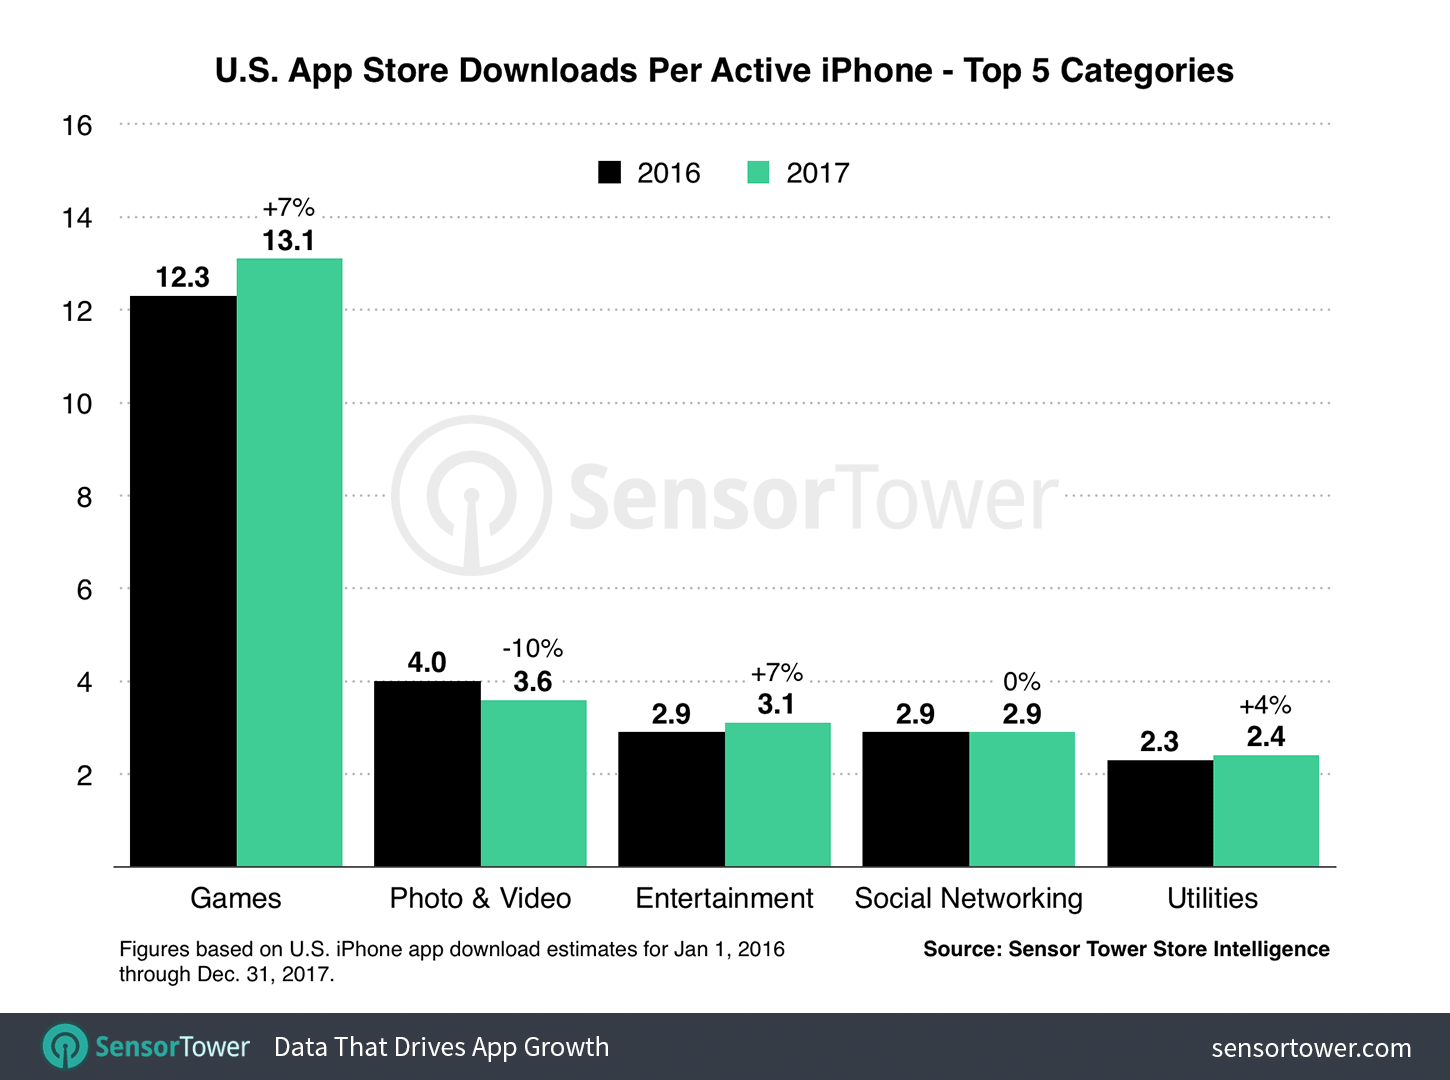 Los usuarios de iPhone gastaron en apps de pago un 23% más en 2017